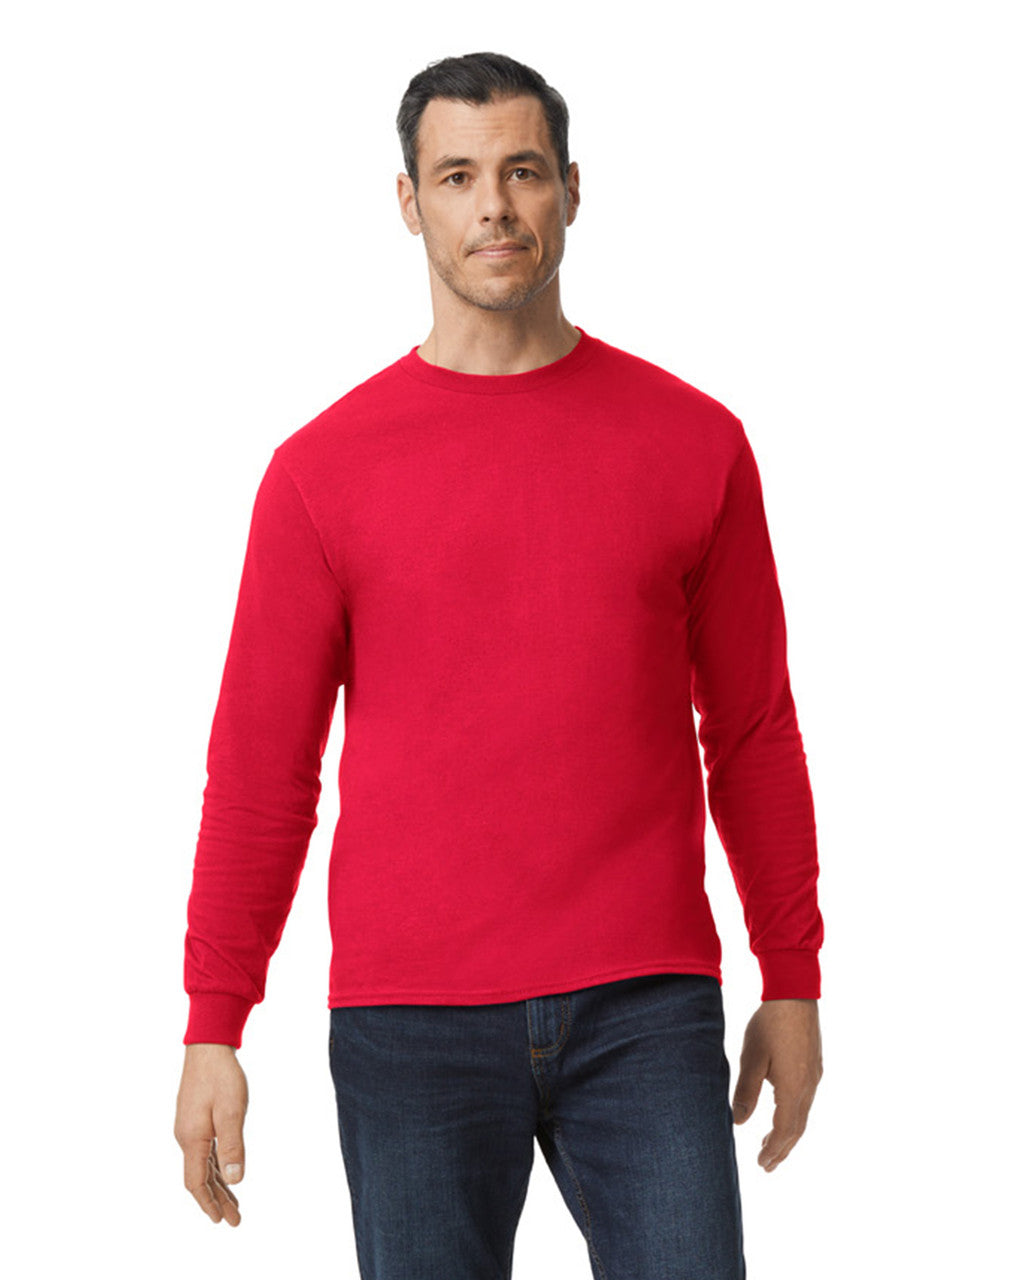 Camiseta Roja Manga Larga Adulto barato – Tienda online de Camiseta Roja  Manga Larga Adulto